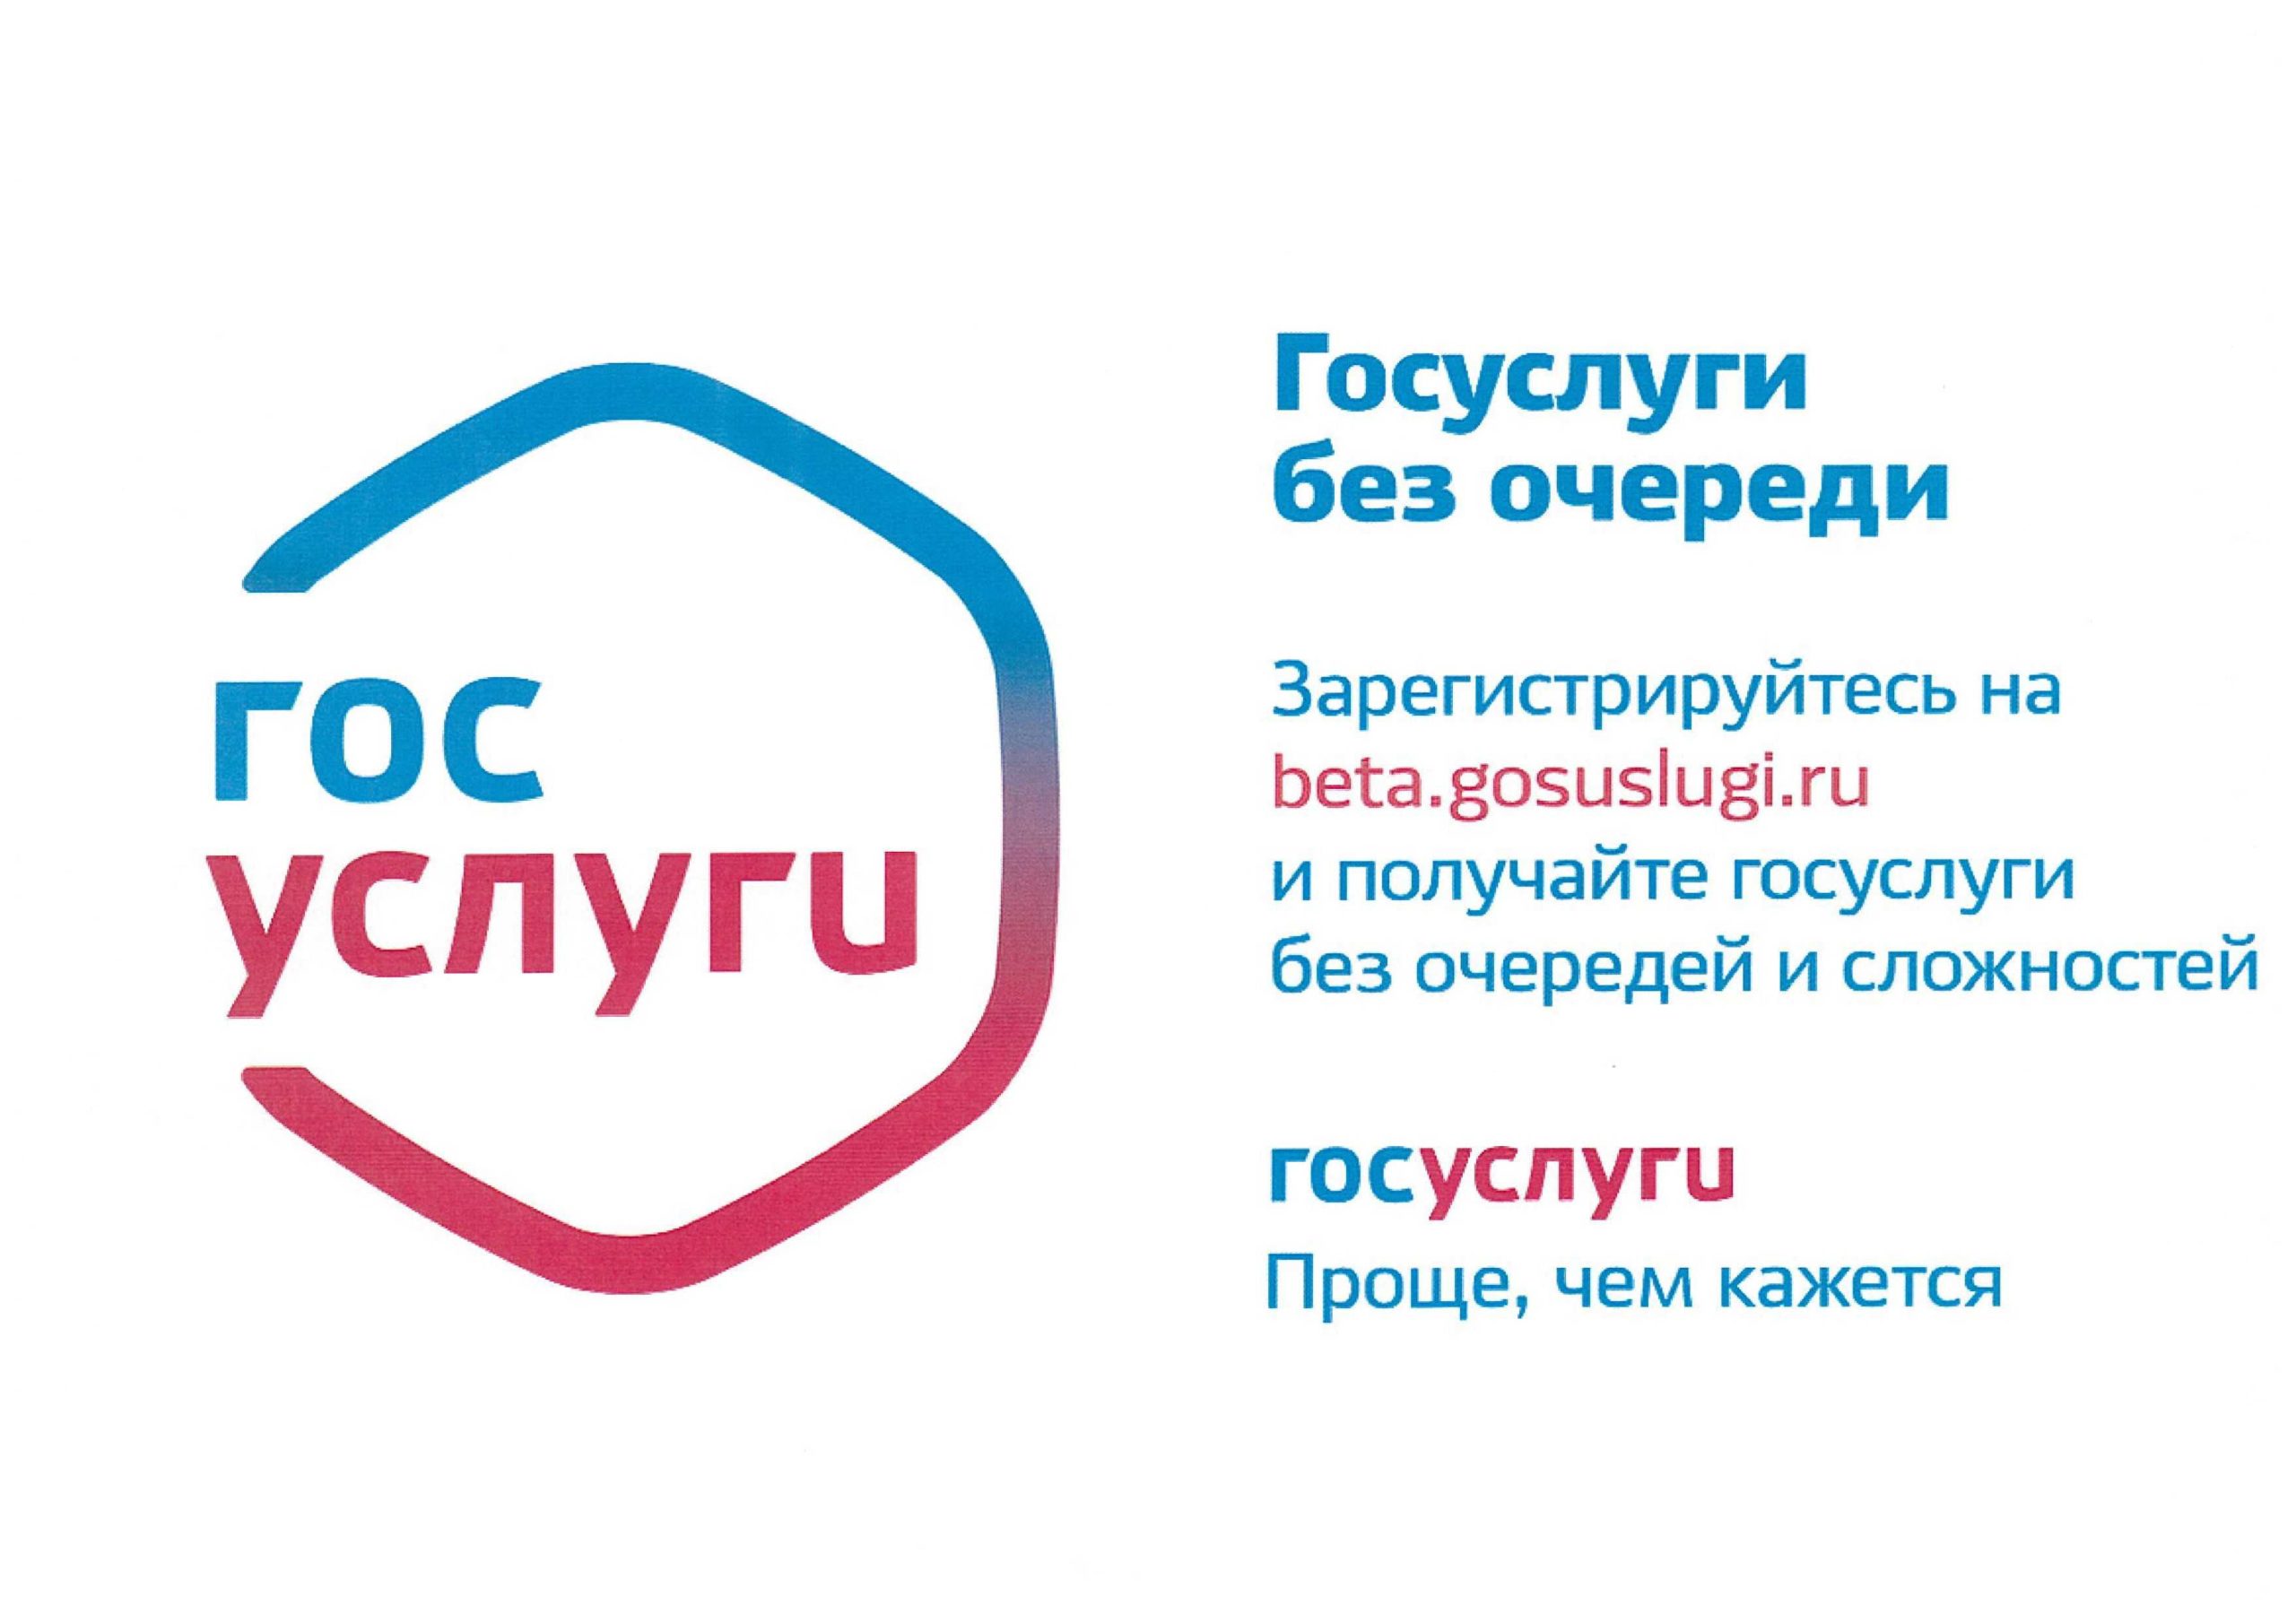 Жители Белгородского района могут получить услуги в сфере социальной защиты на портале Госуслуги.